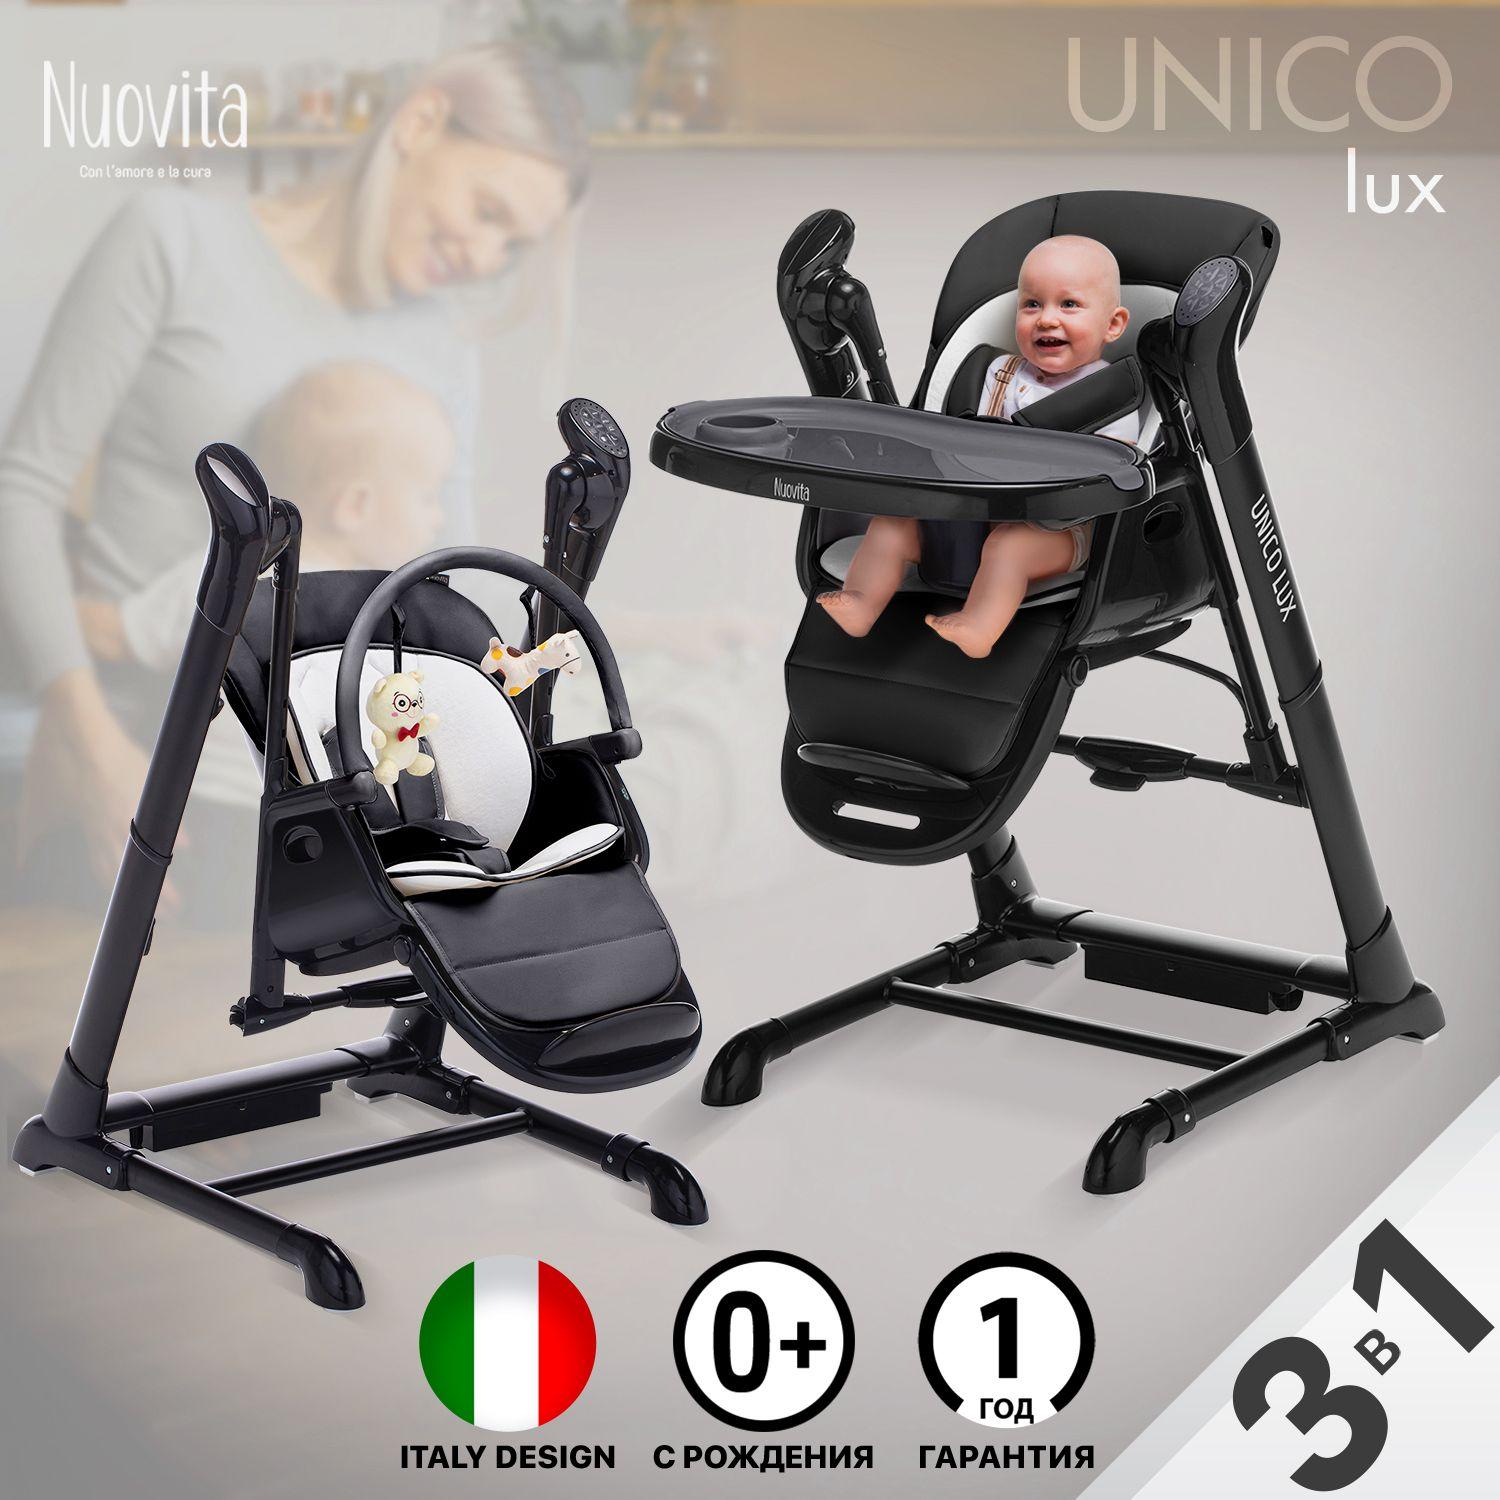 Стульчик для кормления Nuovita Unico lux Nero шезлонг для новорожденных, растущий складной напольный с рождения, чехол моющийся из ЭКО-кожи